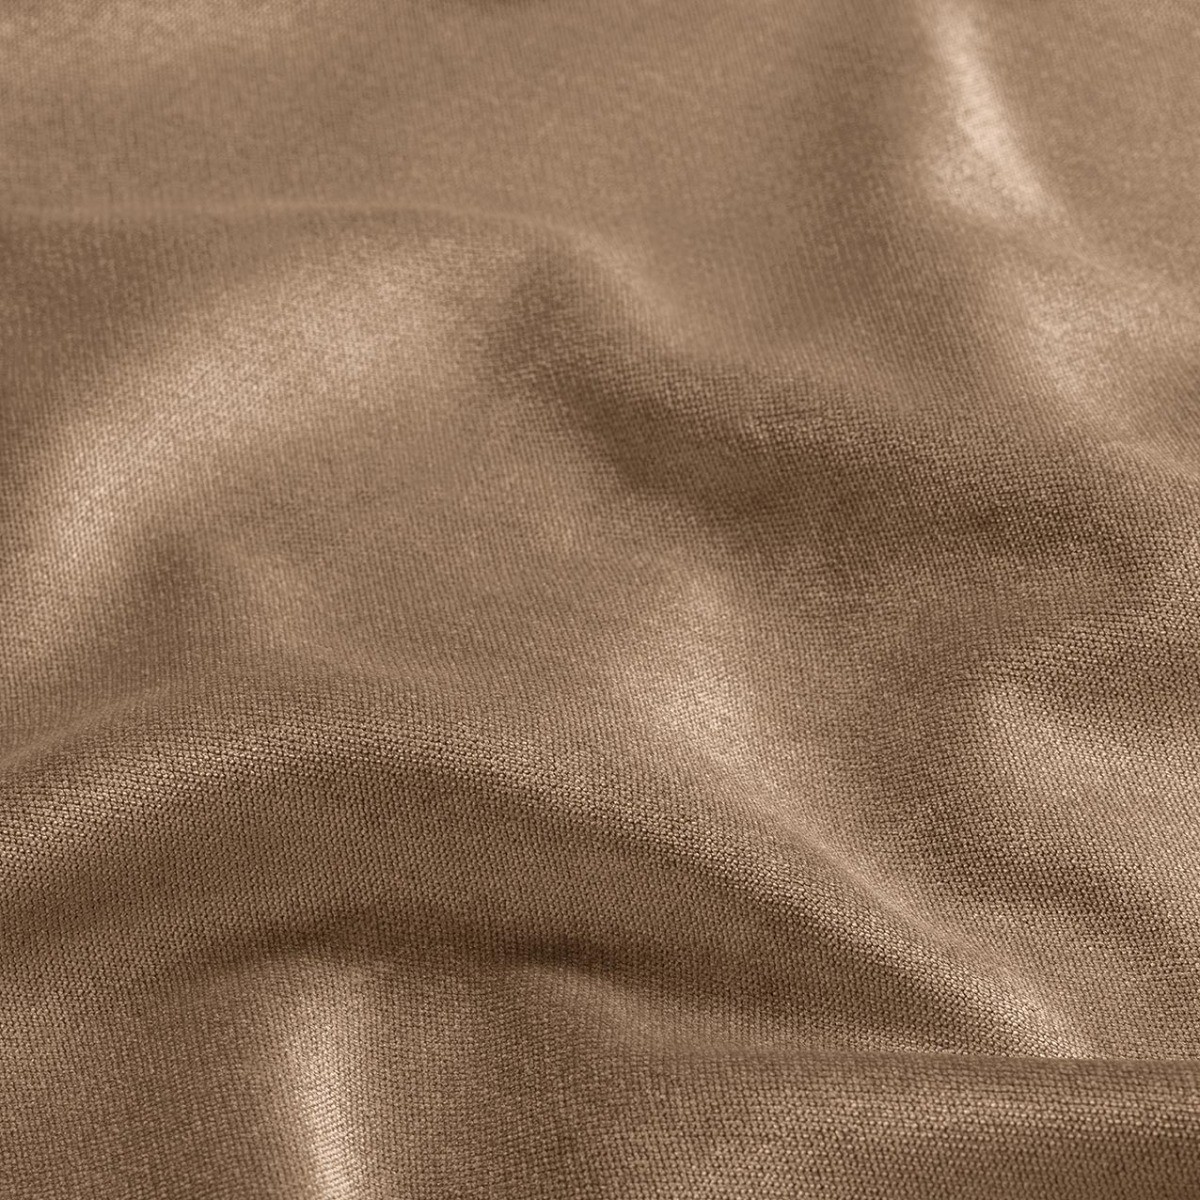  Портьерная ткань SHADE BEIGE, ширина 290 см  - Фото